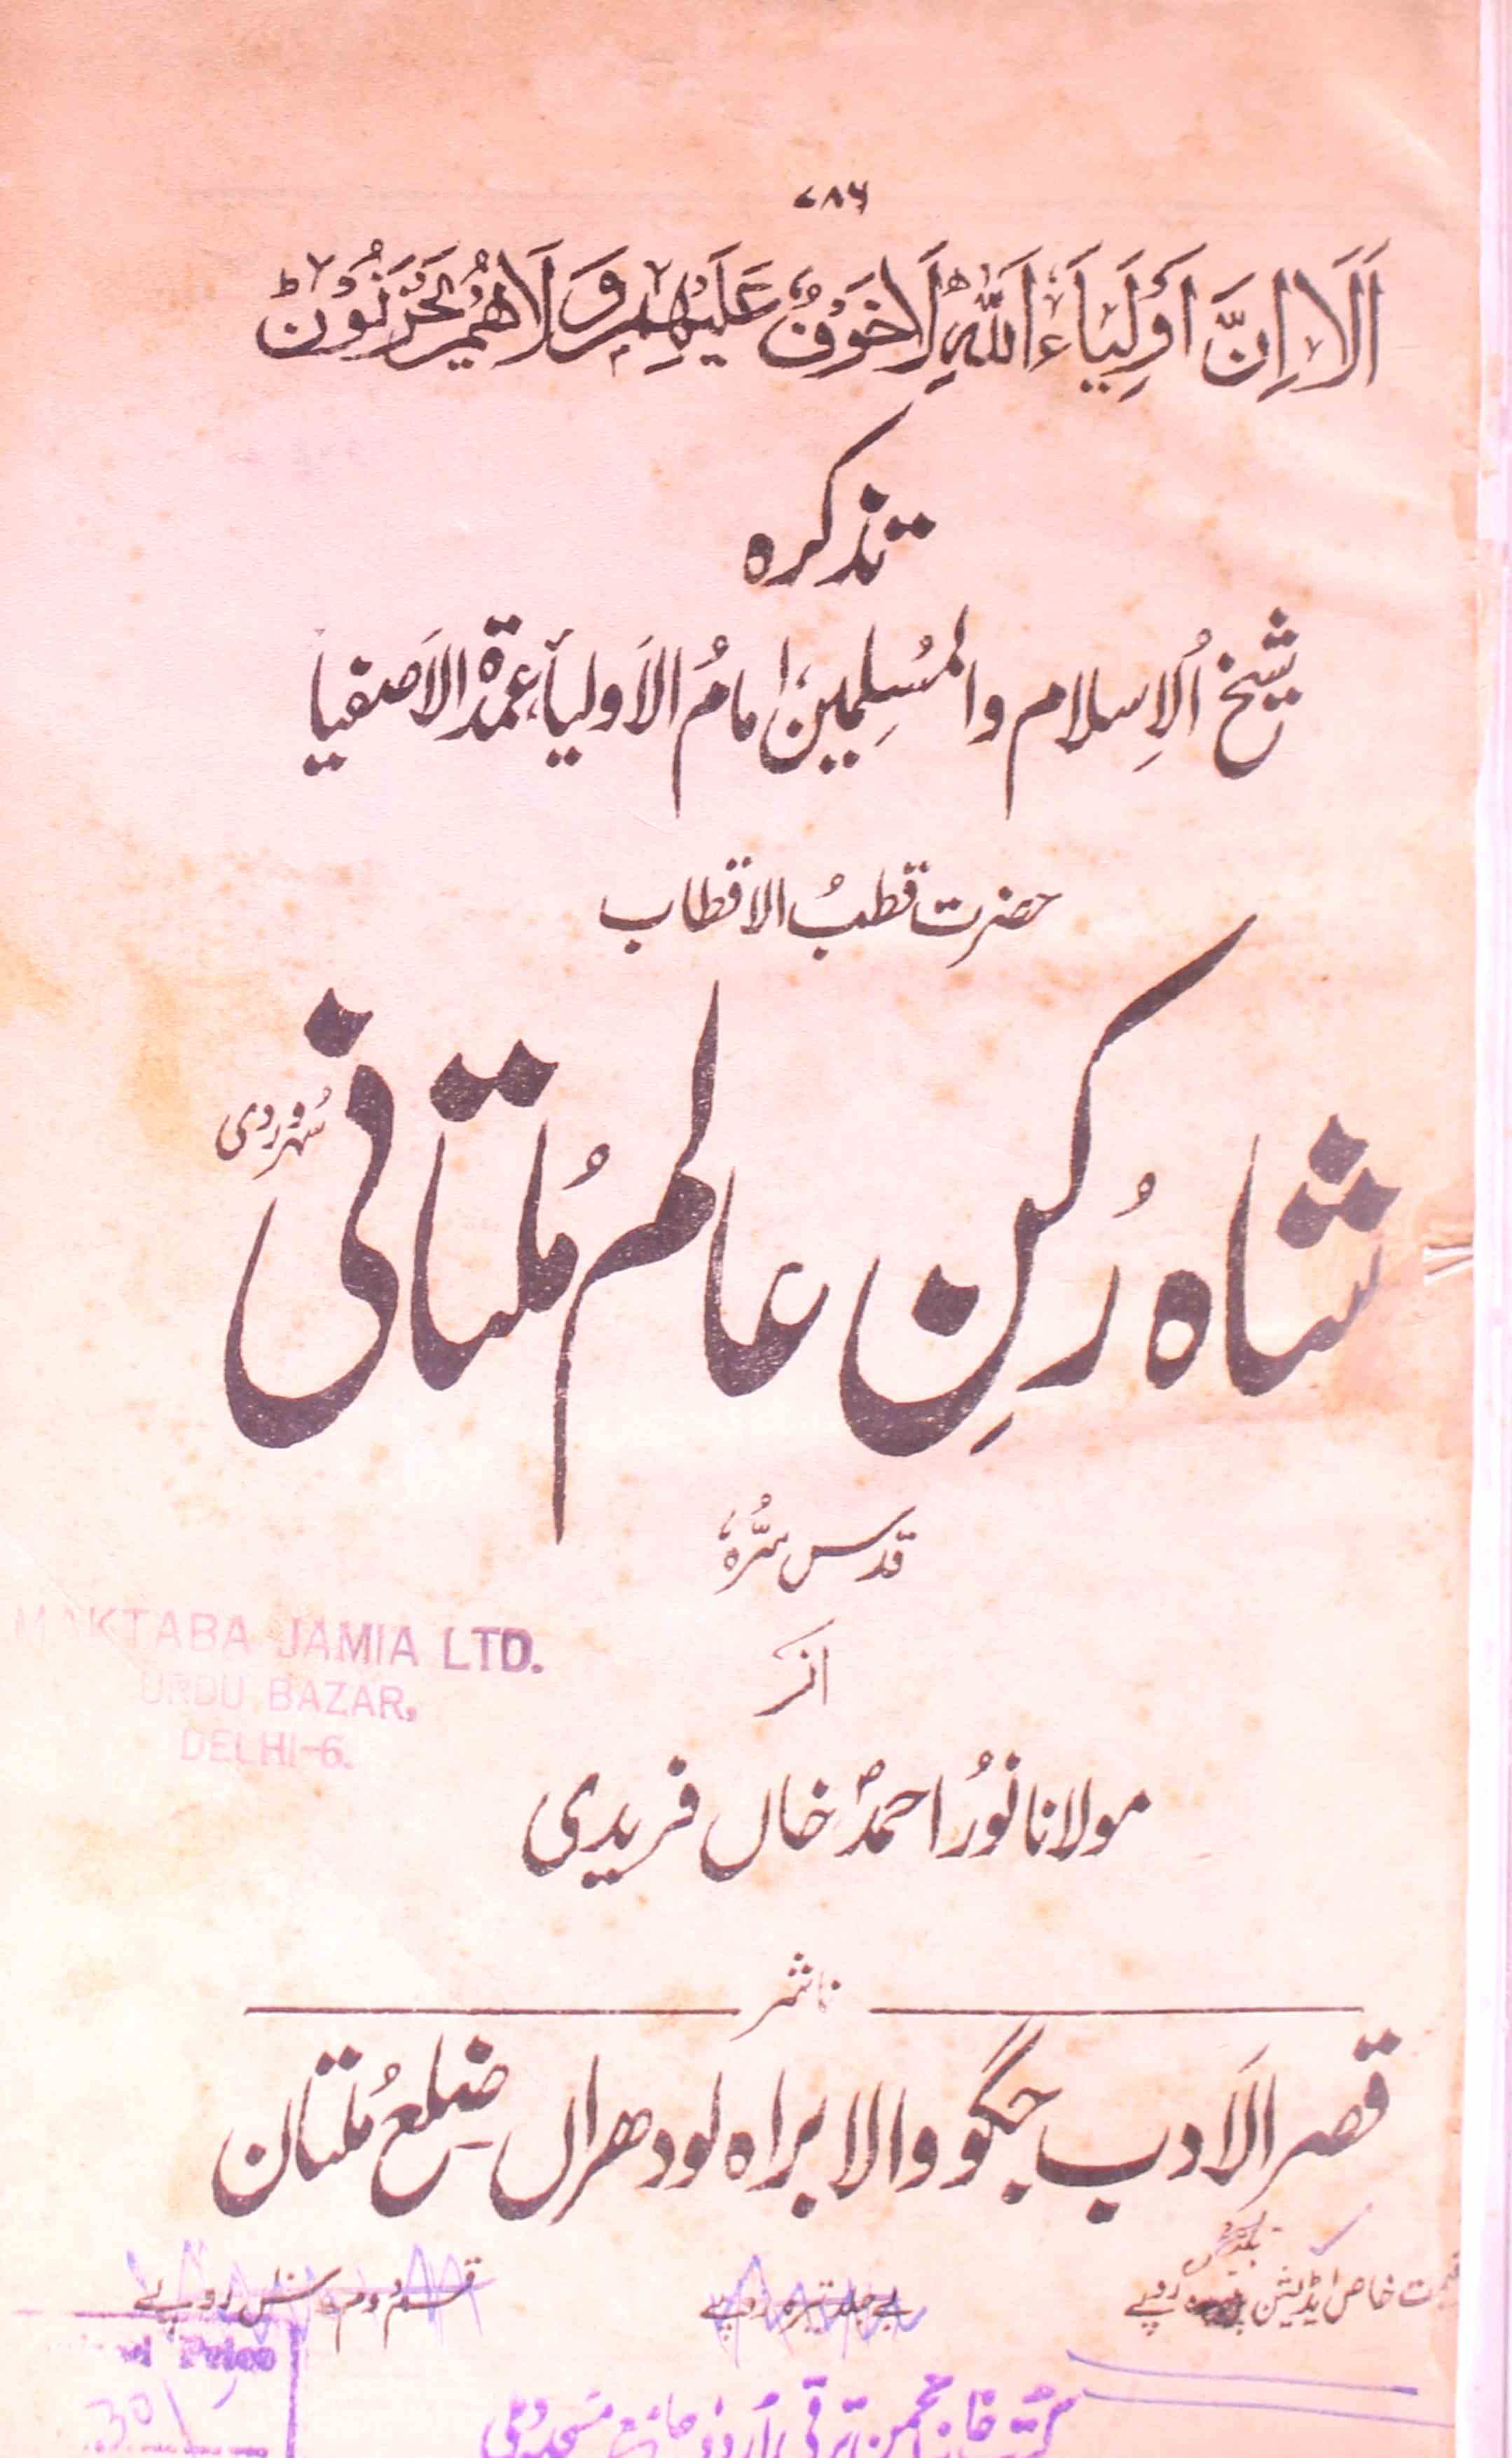 Shah Rukn-e-Alam Multani